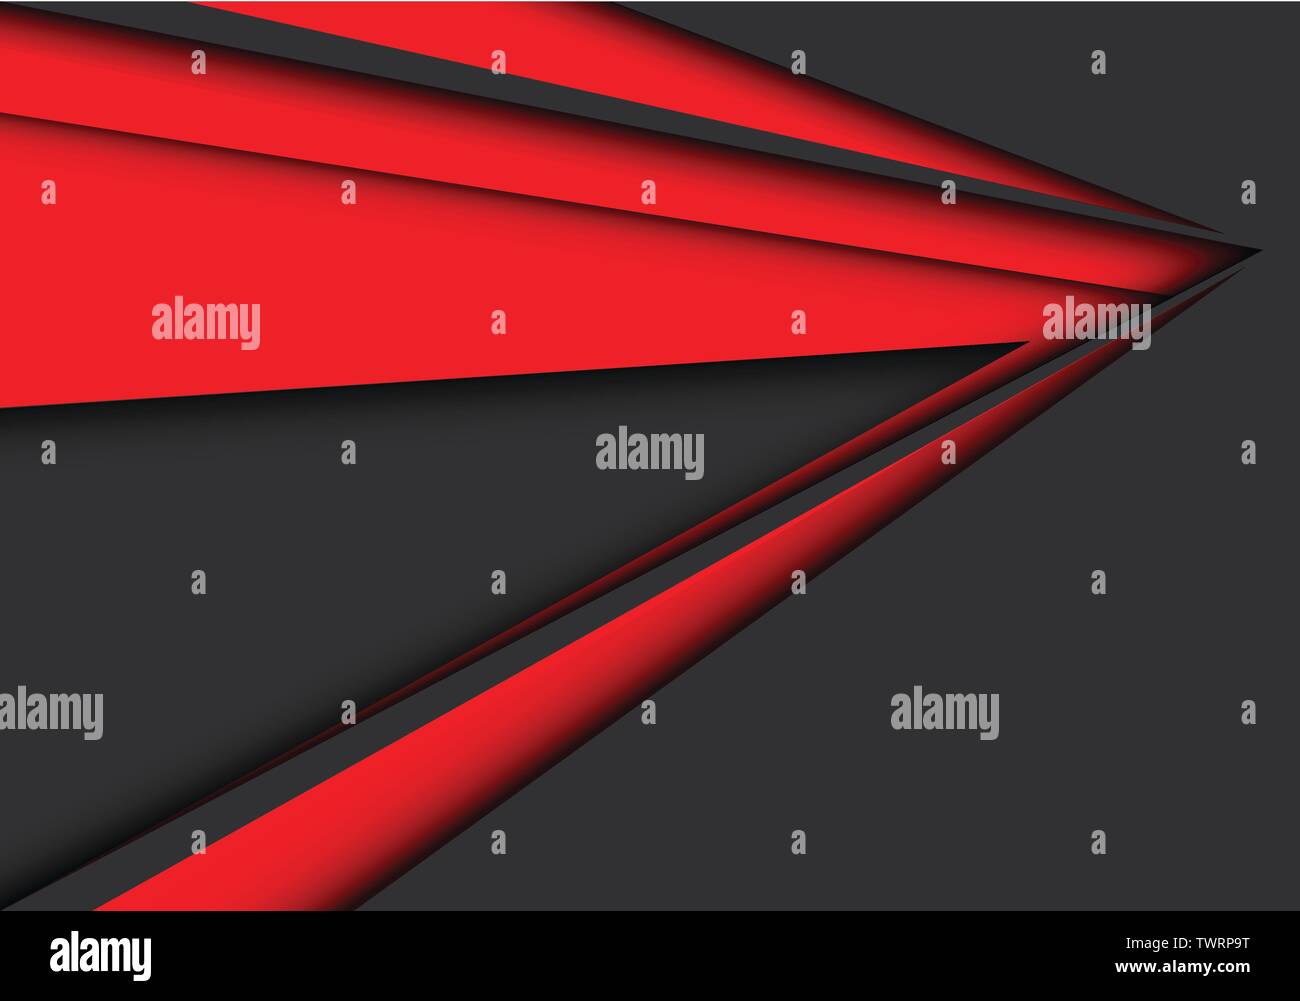 Abstract flèche rouge sur gris foncé moderne design futuristic background vector illustration. Illustration de Vecteur